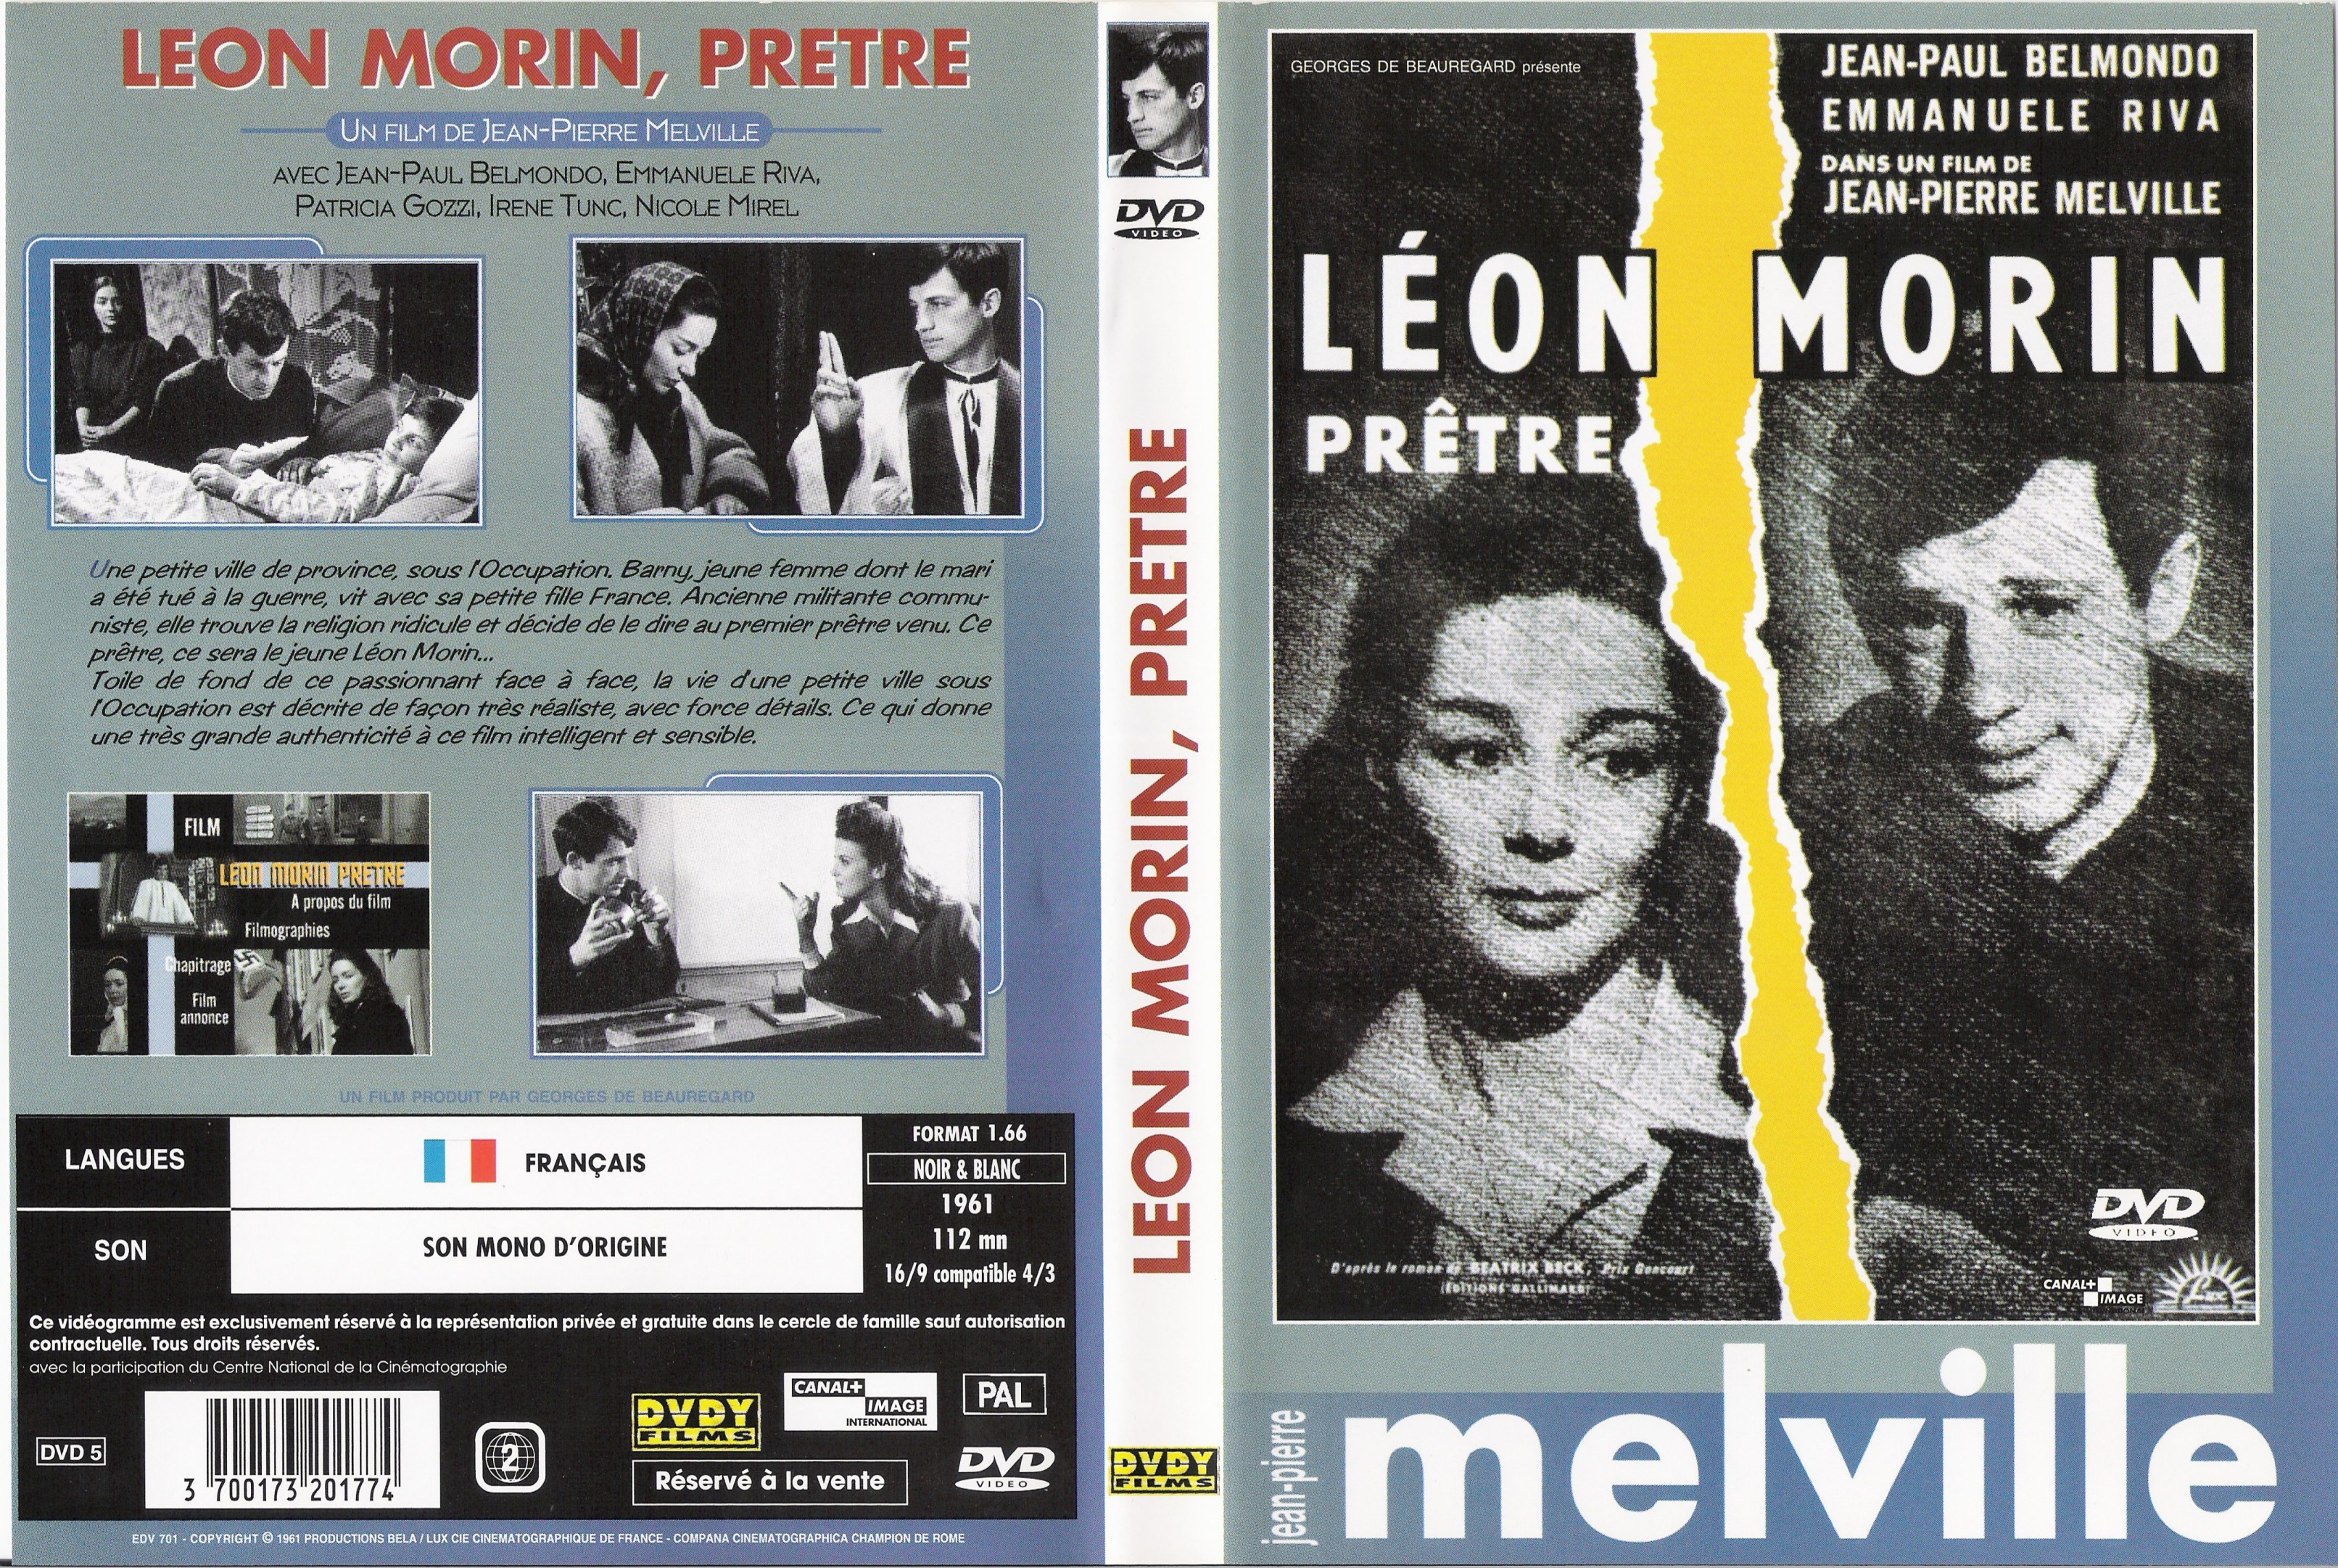 Leon Morin Pretre [1961]